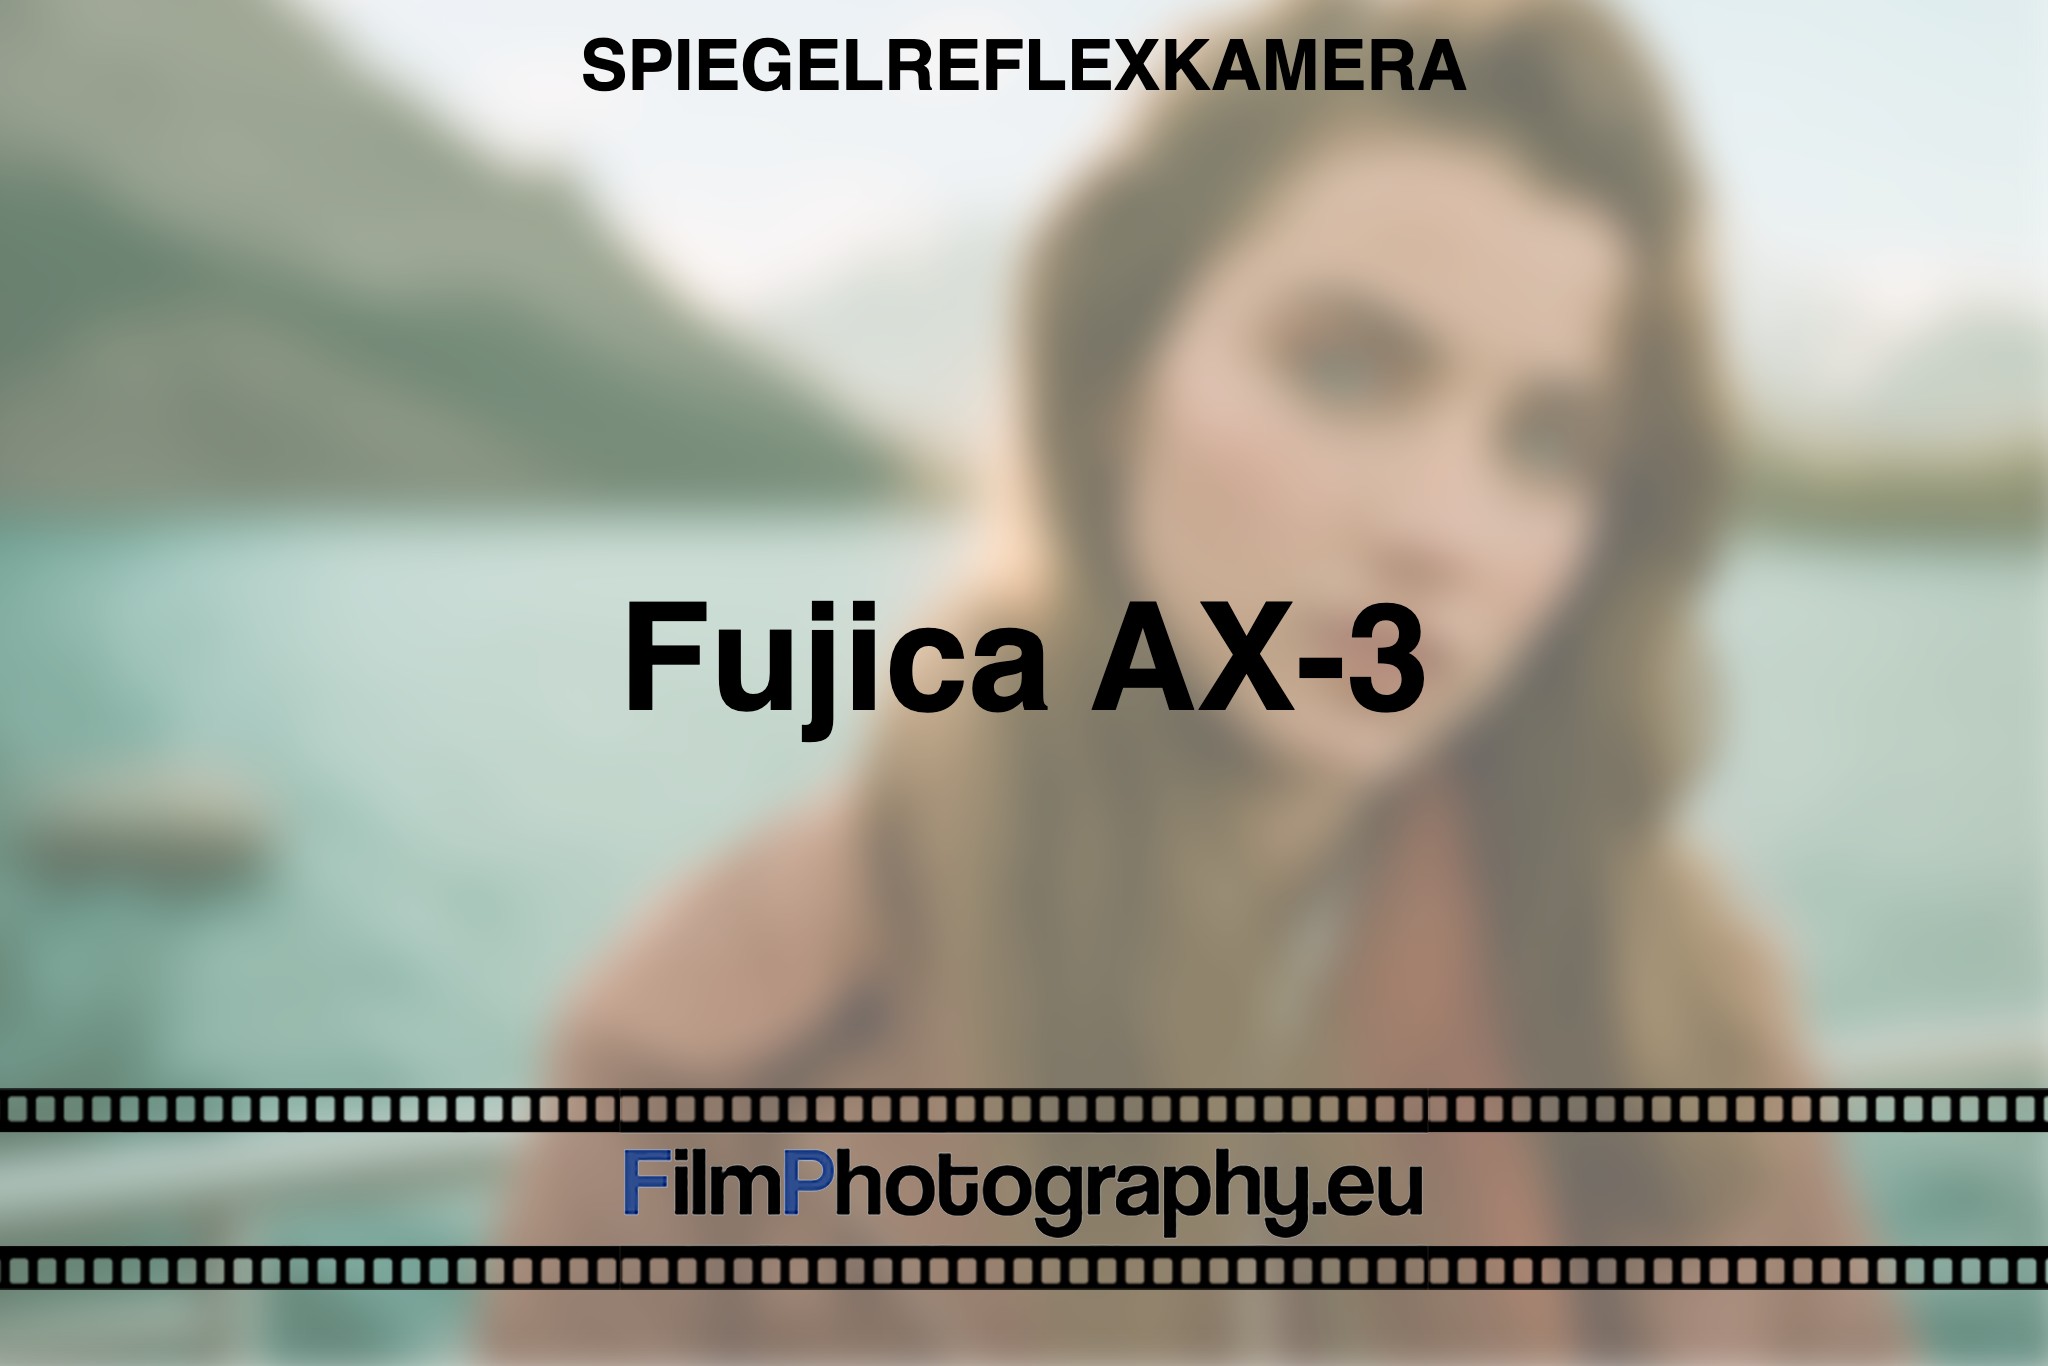 fujica-ax-3-spiegelreflexkamera-bnv